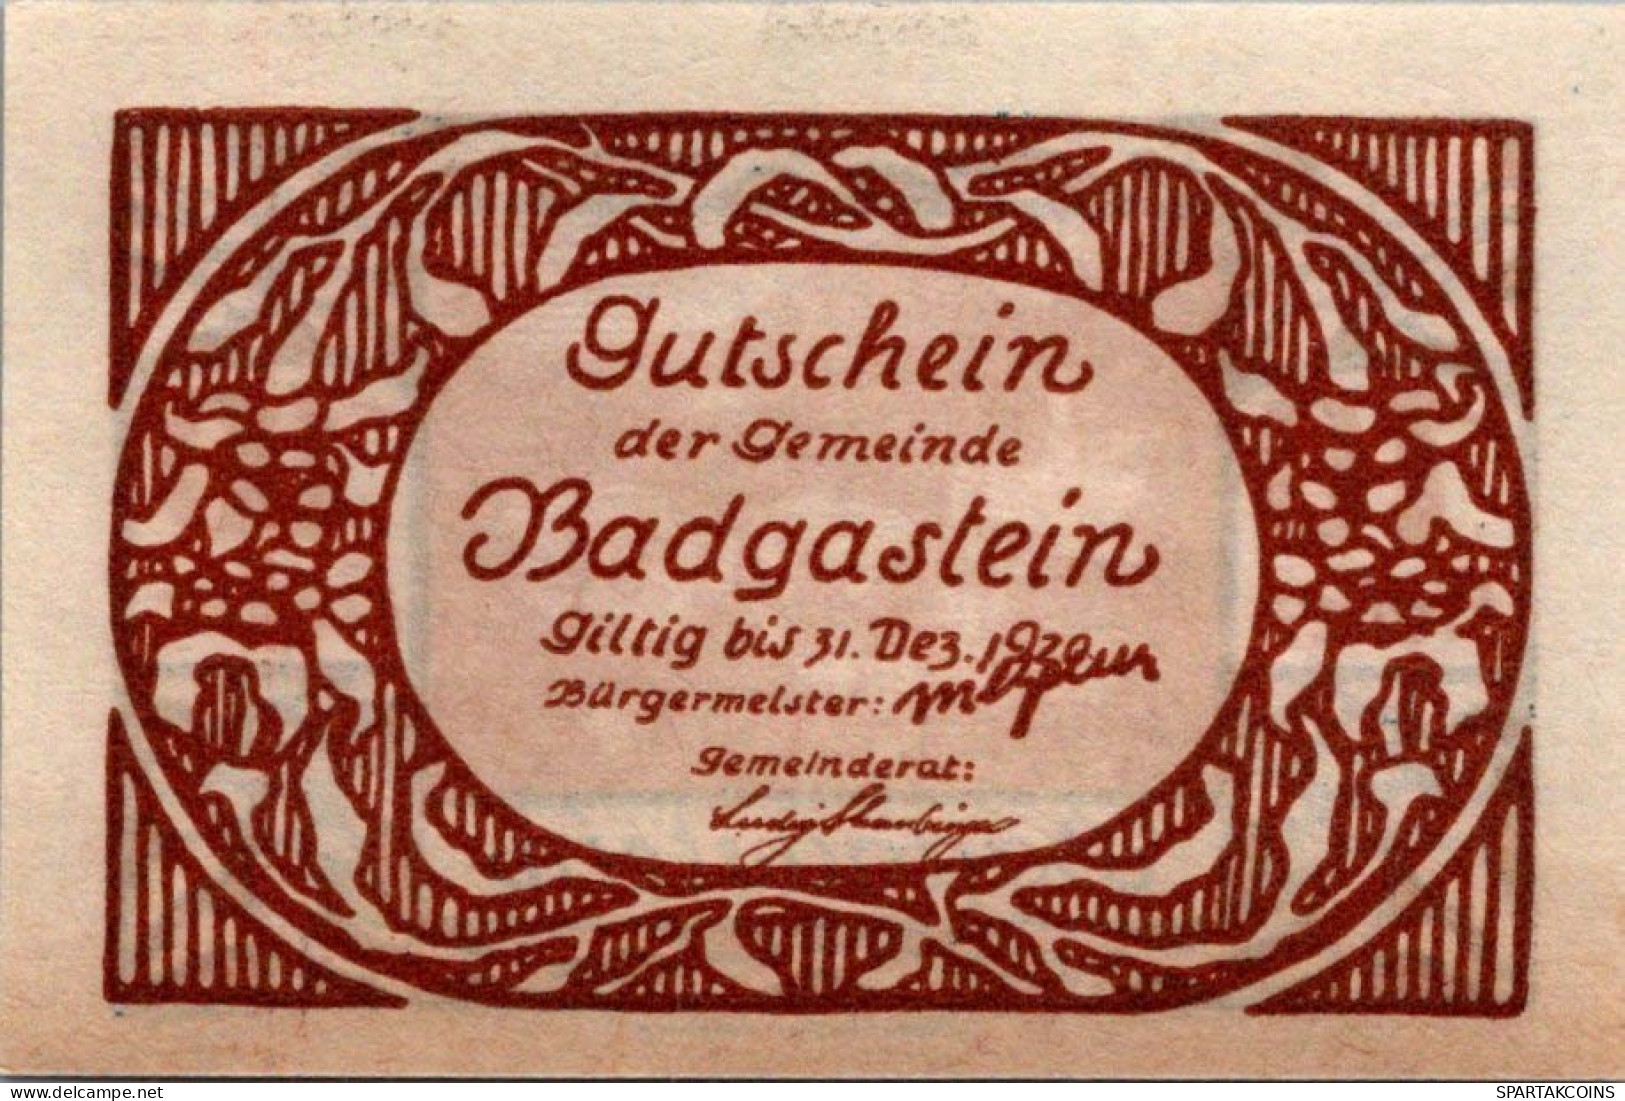 10 HELLER 1920 Stadt BAD GASTEIN Salzburg Österreich Notgeld Banknote #PF363 - [11] Local Banknote Issues